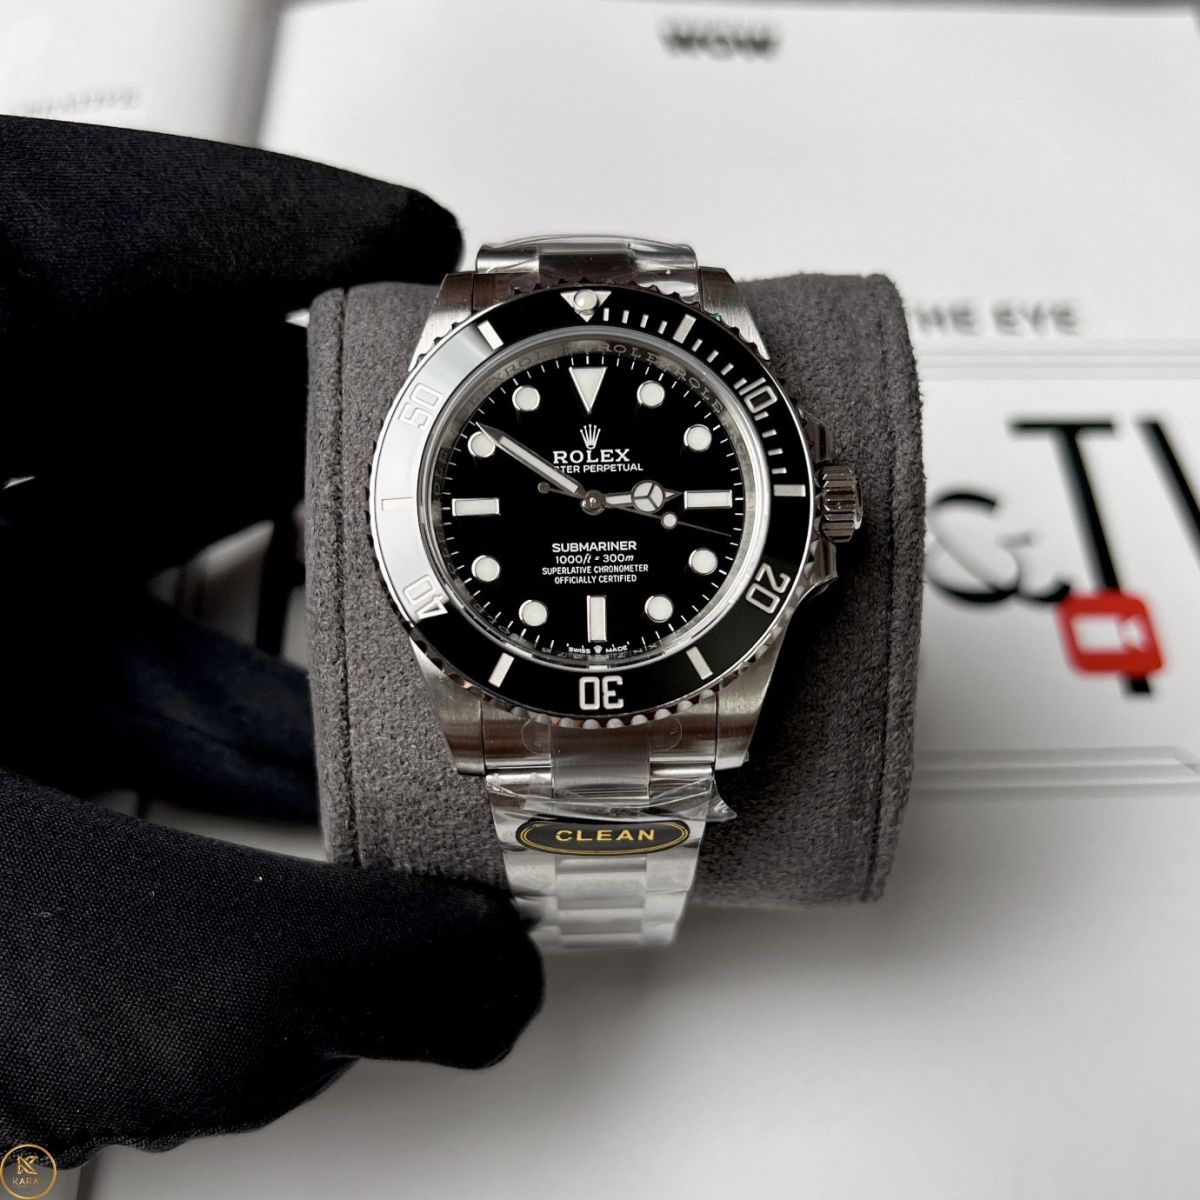 Thiết kế đồng hồ Rolex 126610LN-0001 bắt mắt và ấn tượng